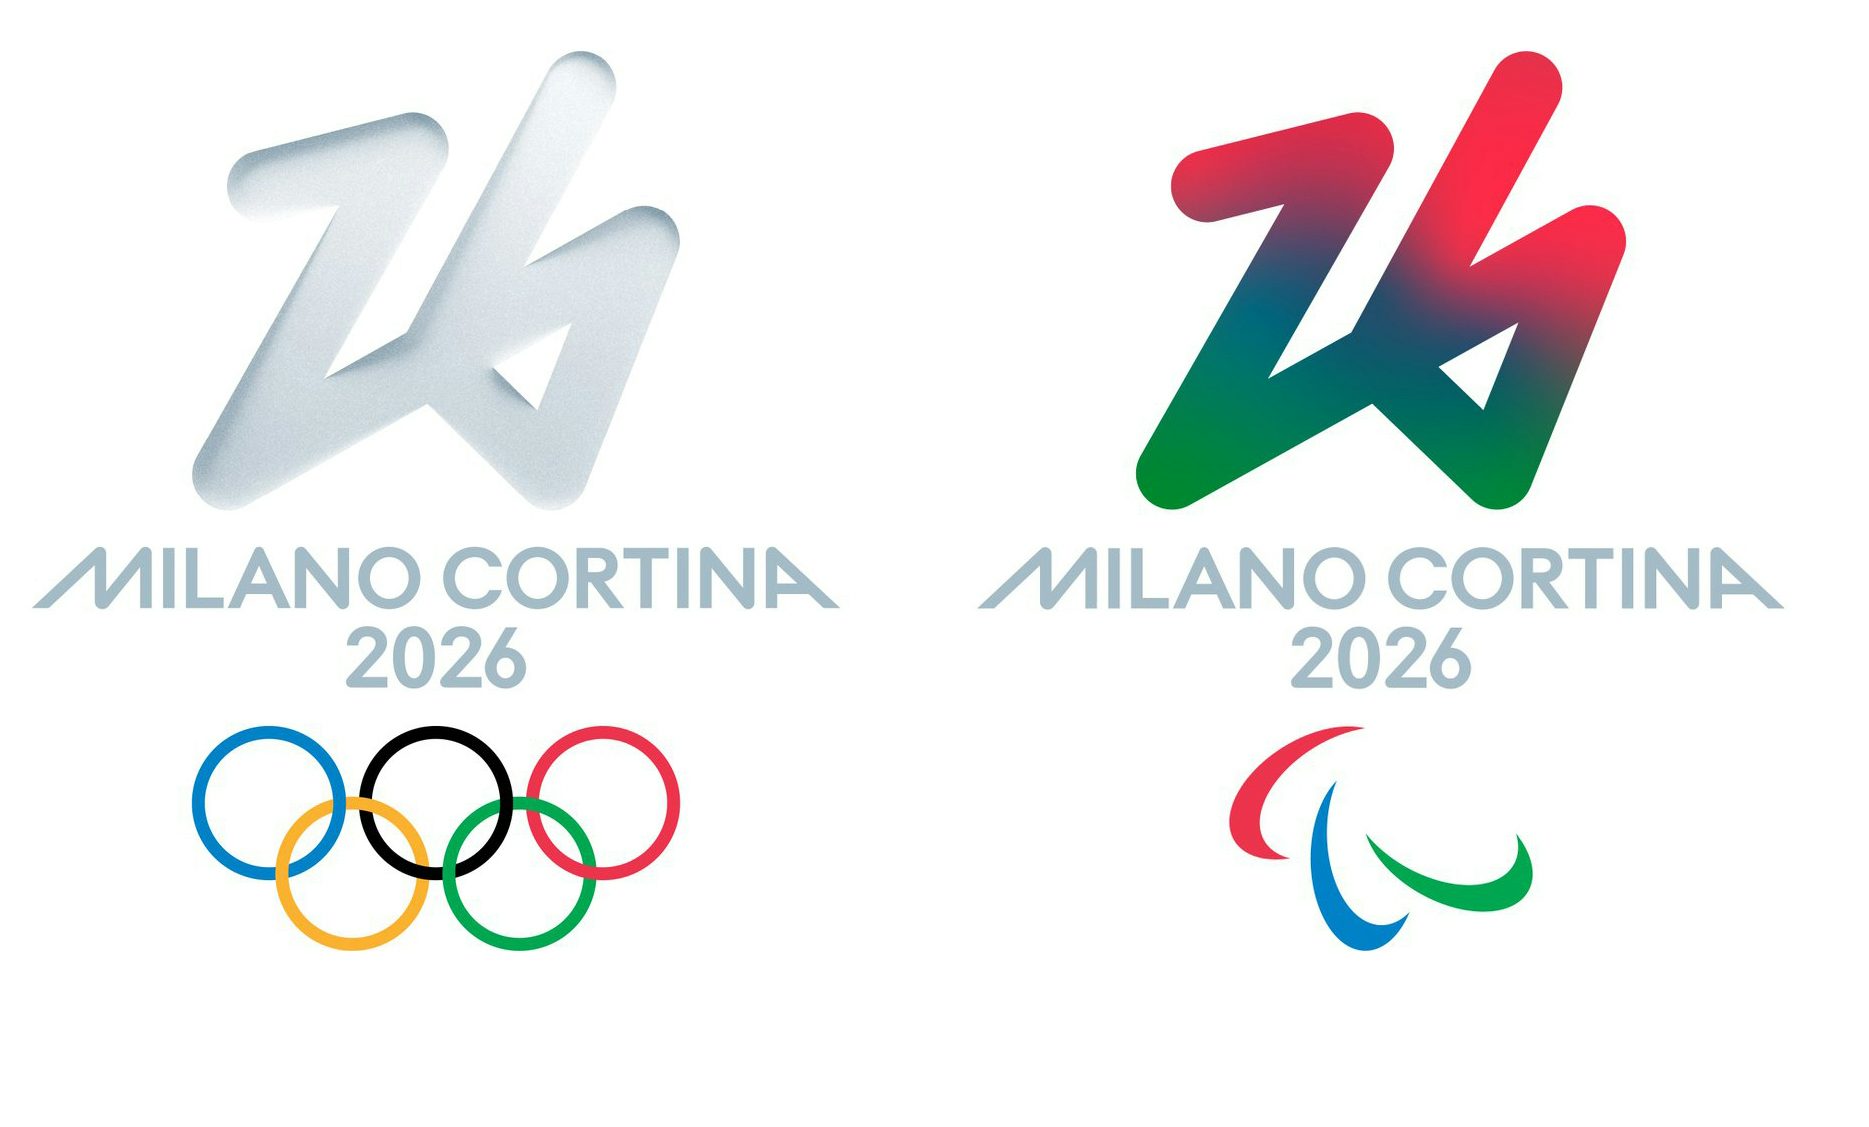 Milano Cortina 2026 Winter Olympics Logo Revealed